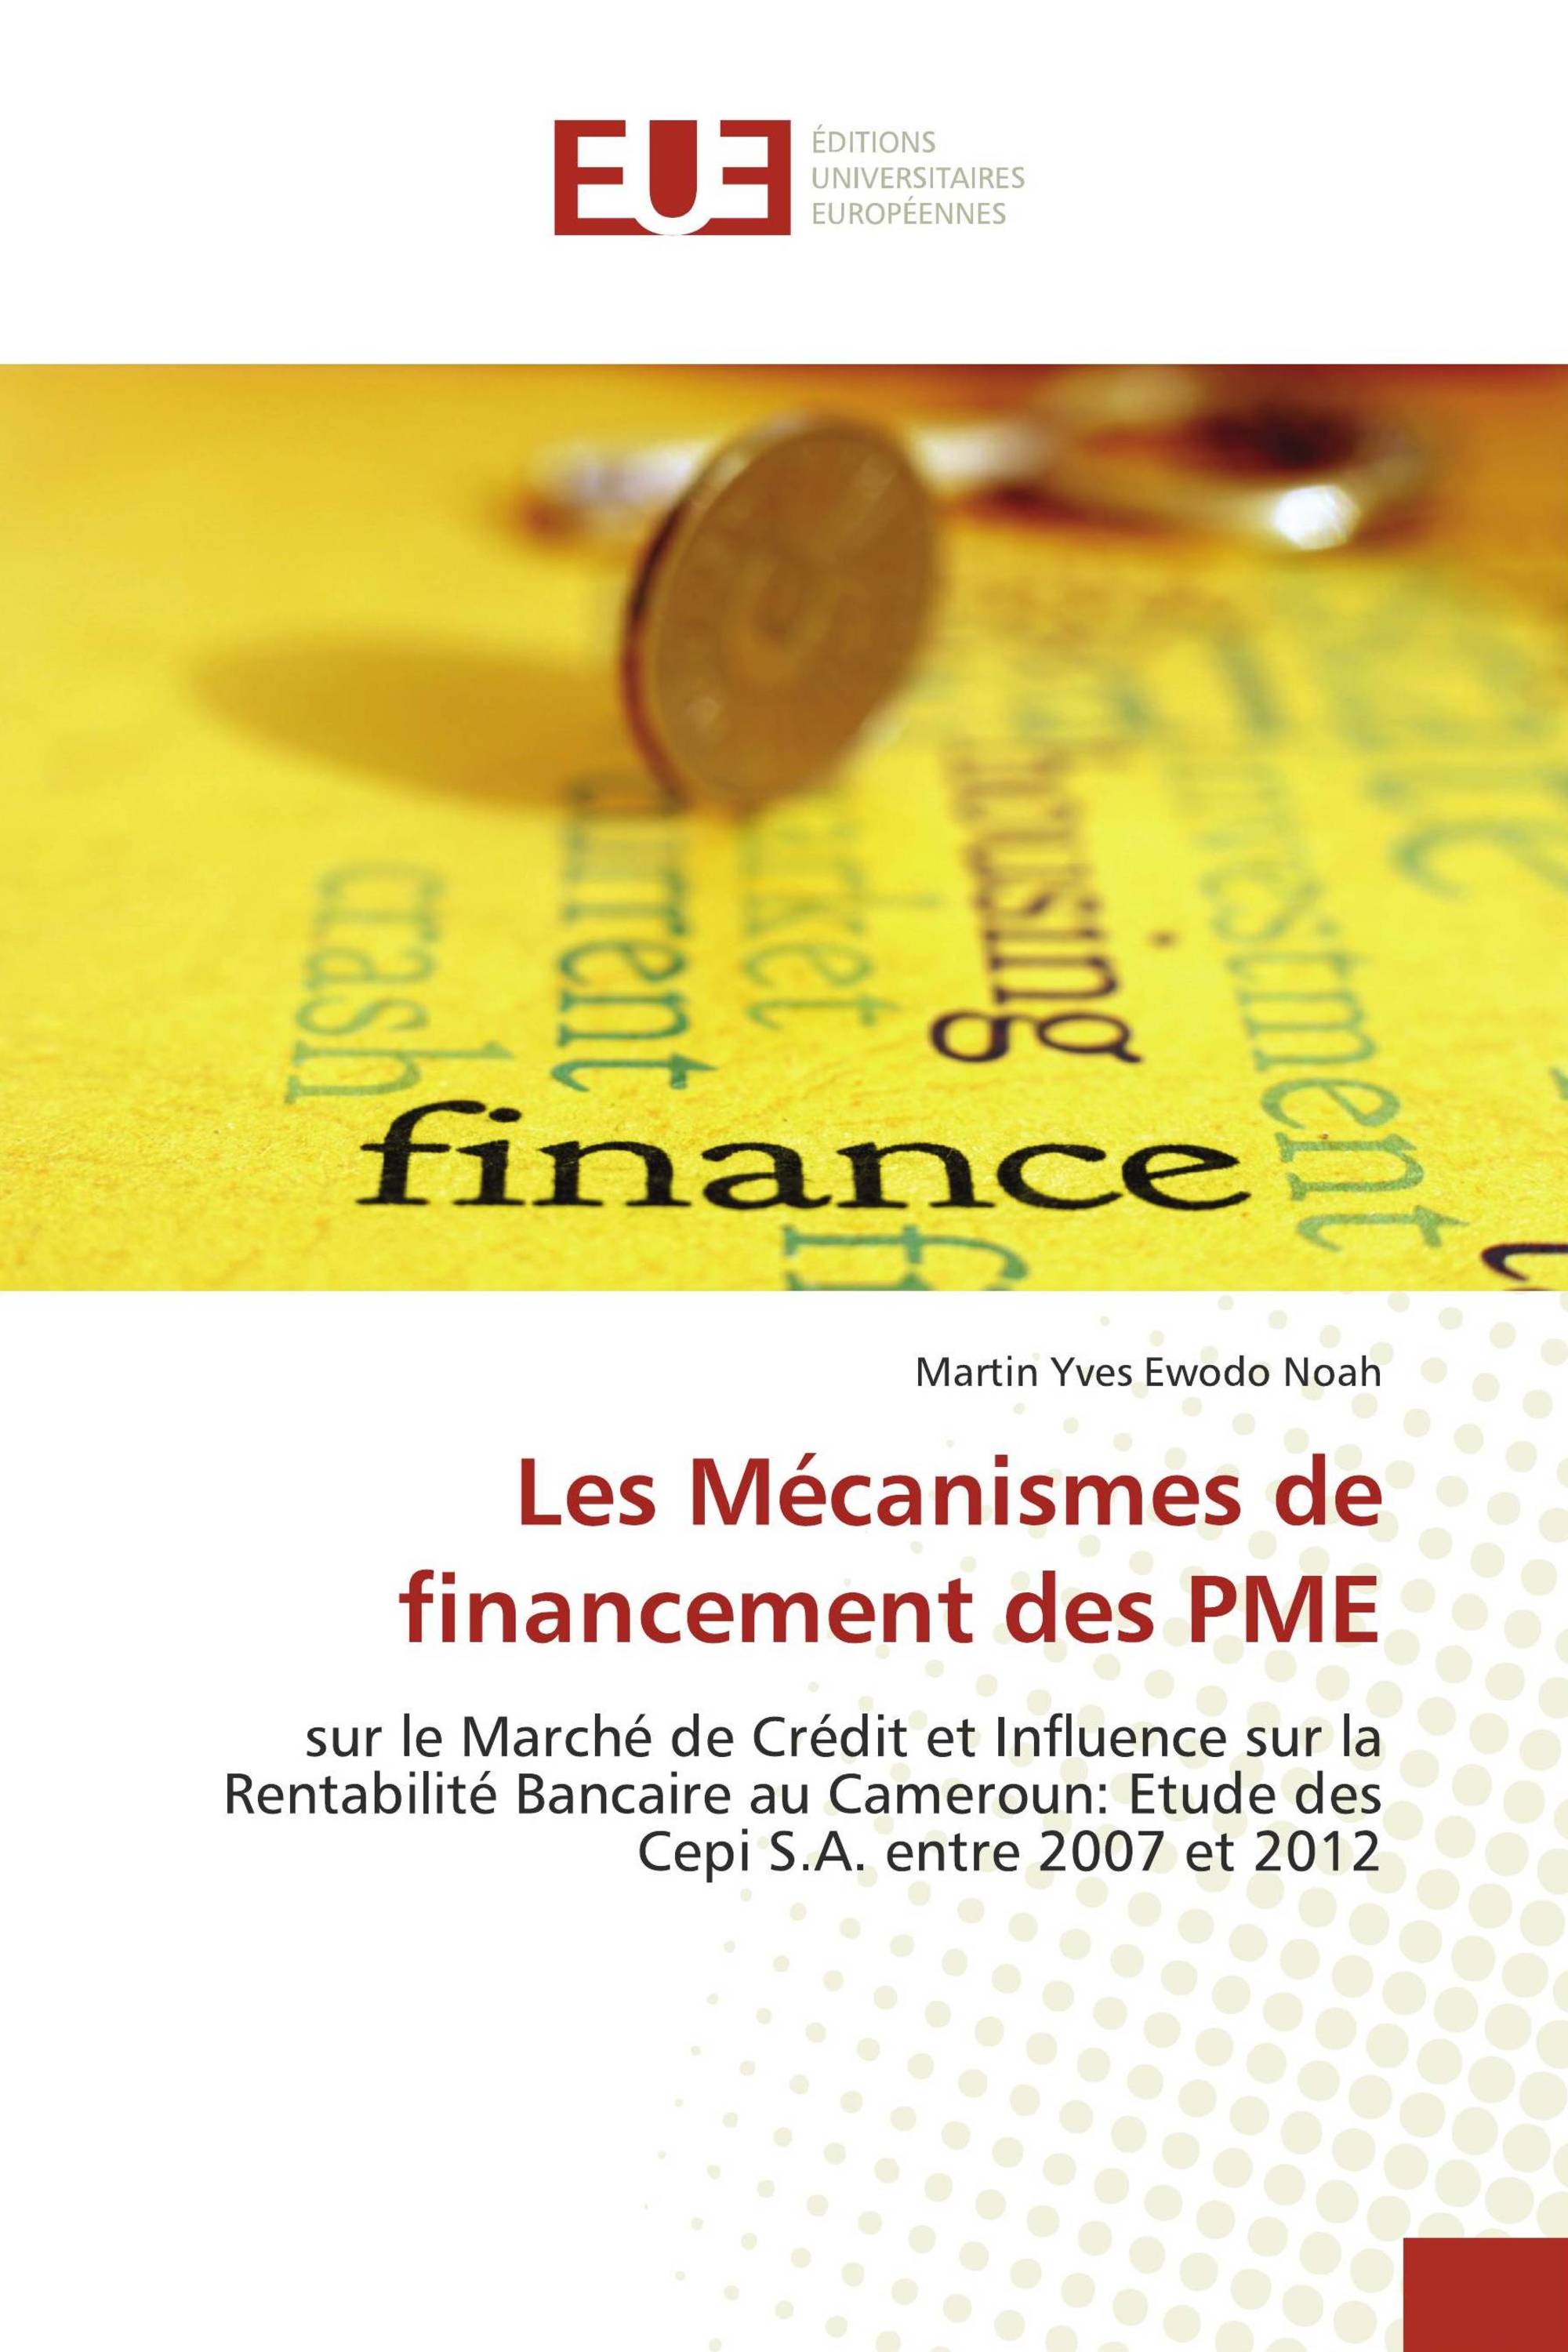 Les Mécanismes de financement des PME